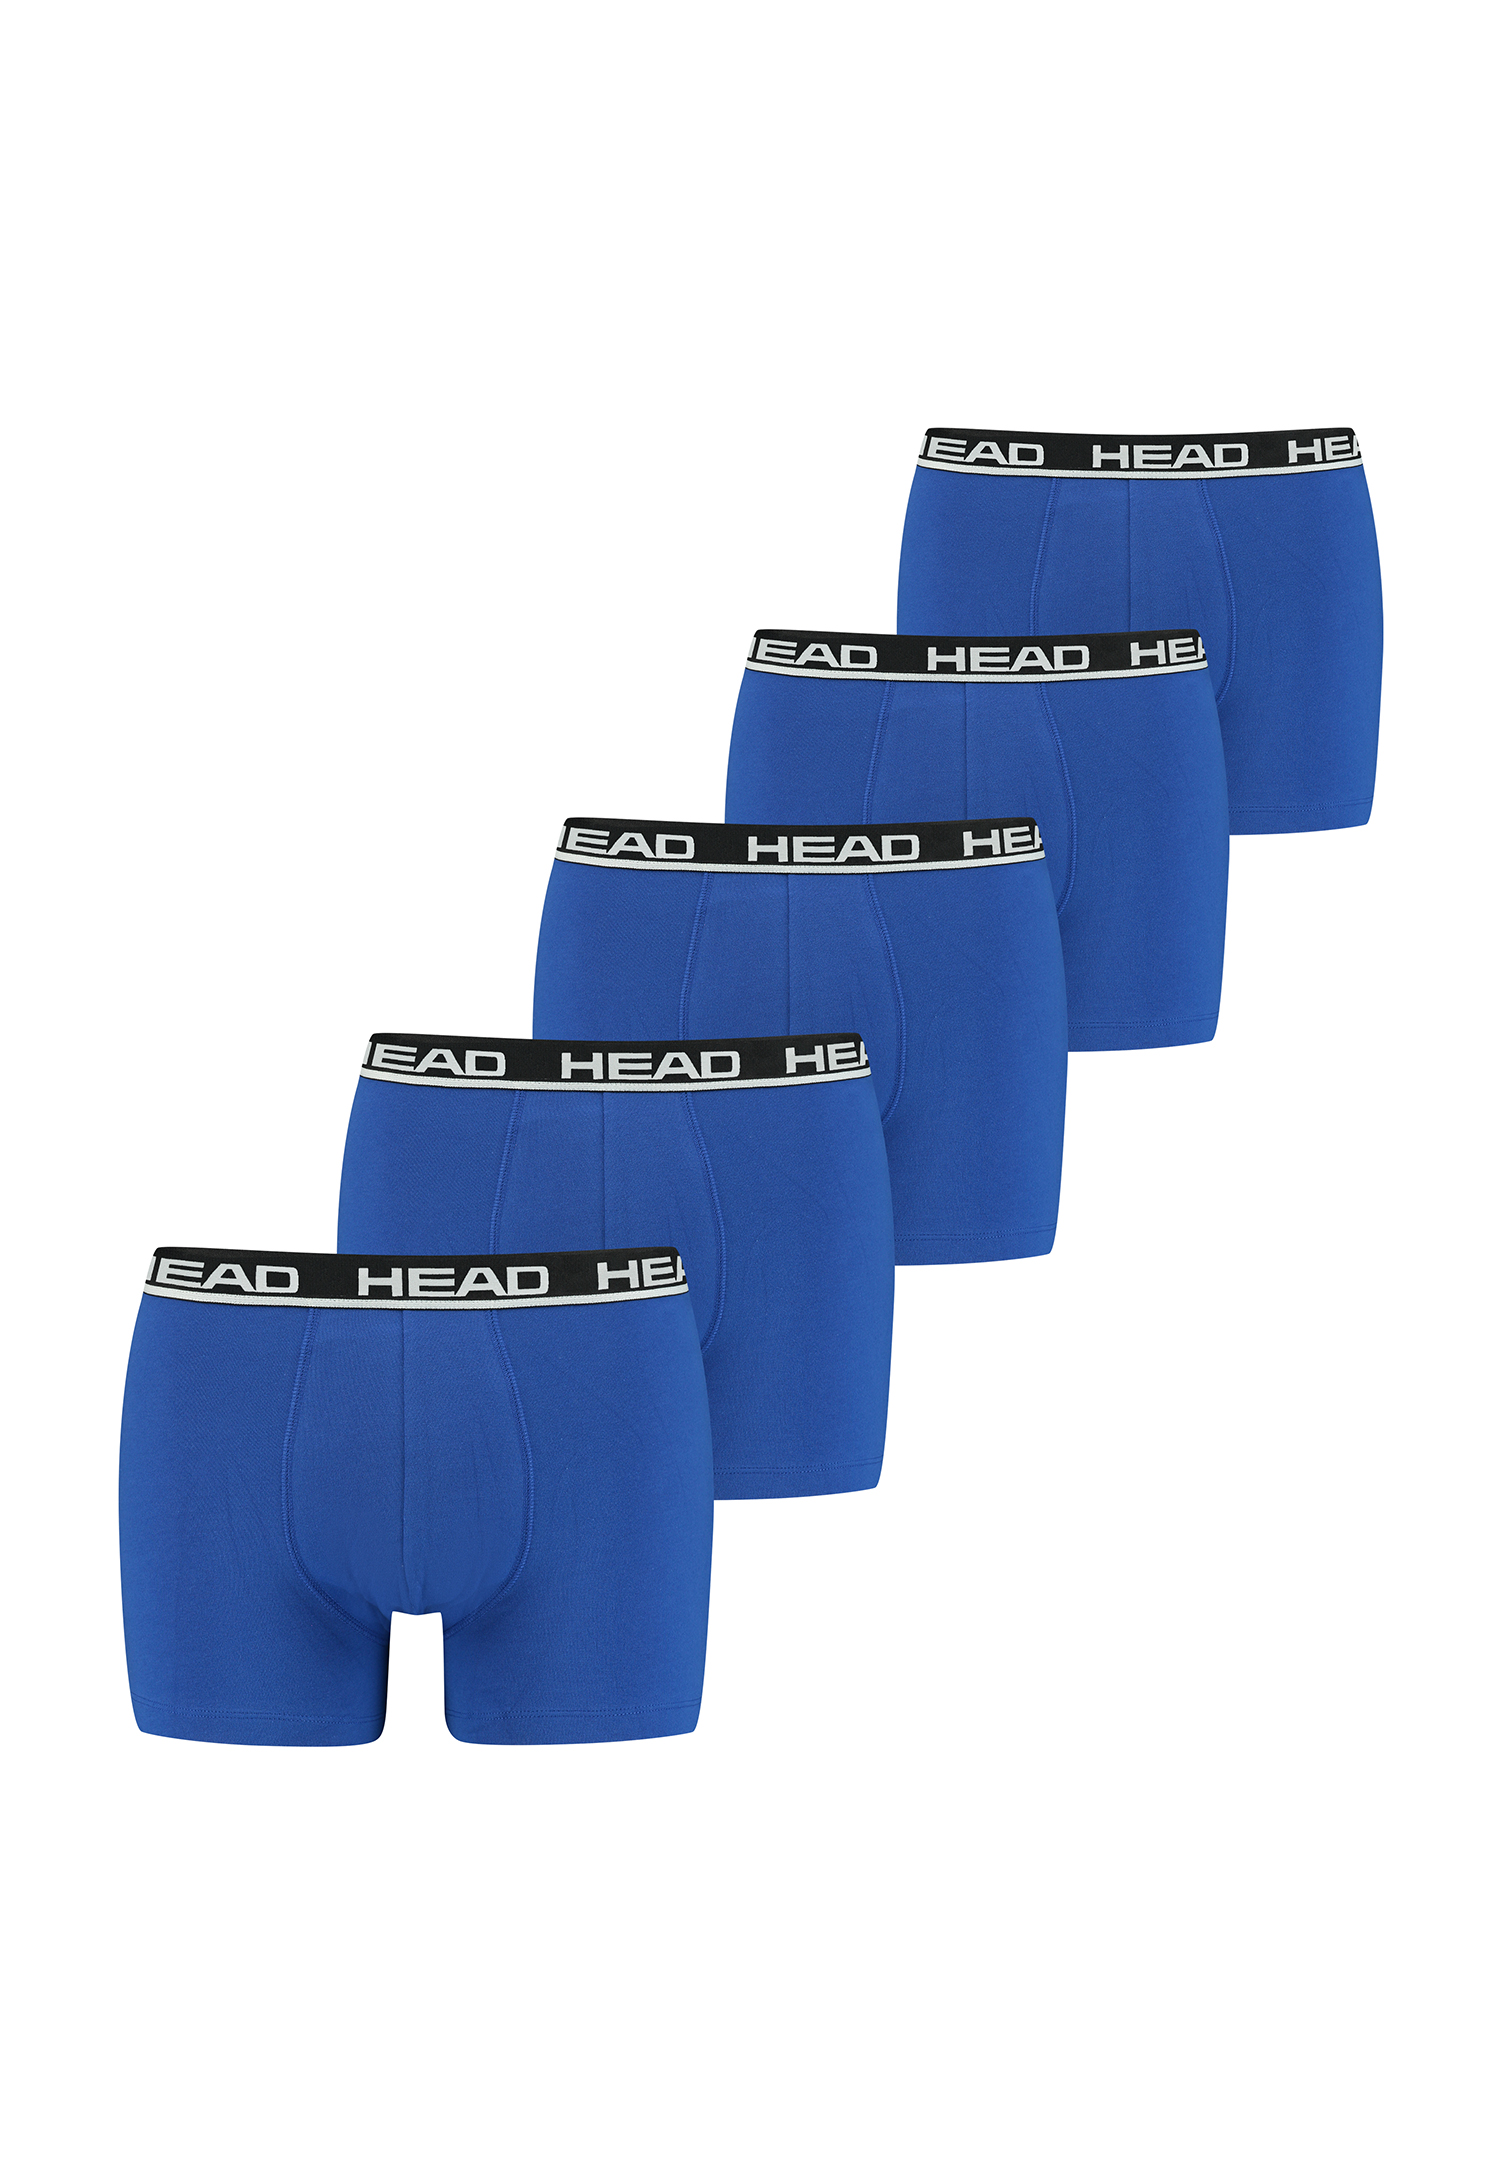 HEAD Herren Men's Basic Boxers Boxer Shorts 5 er Pack 